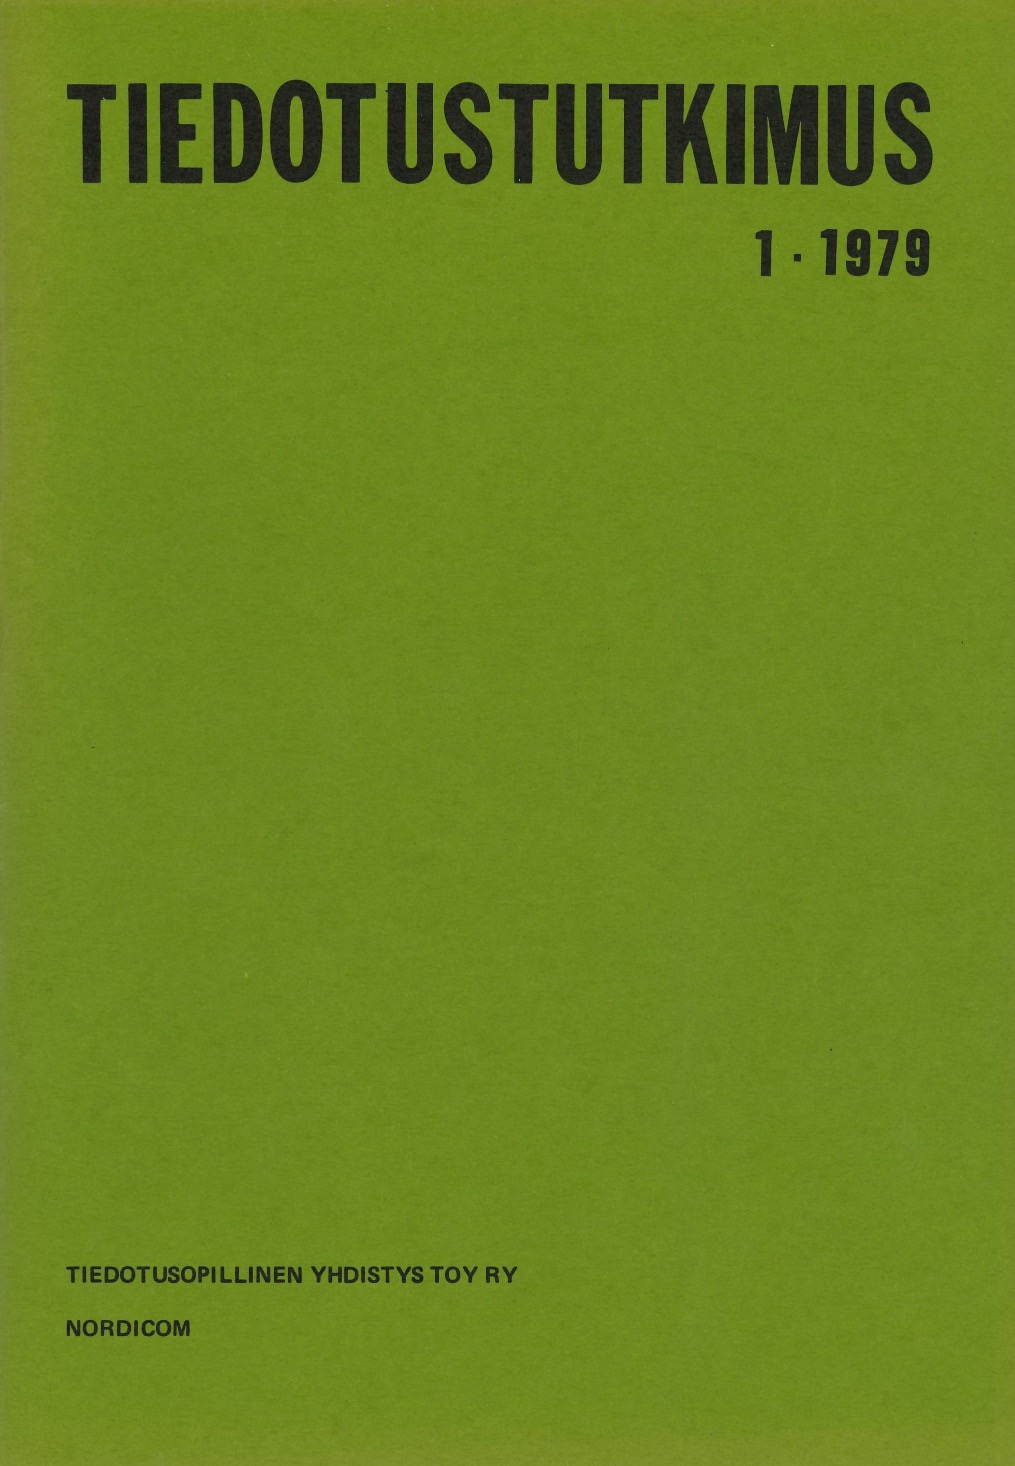 					Näytä Vol 2 Nro 1 (1979)
				